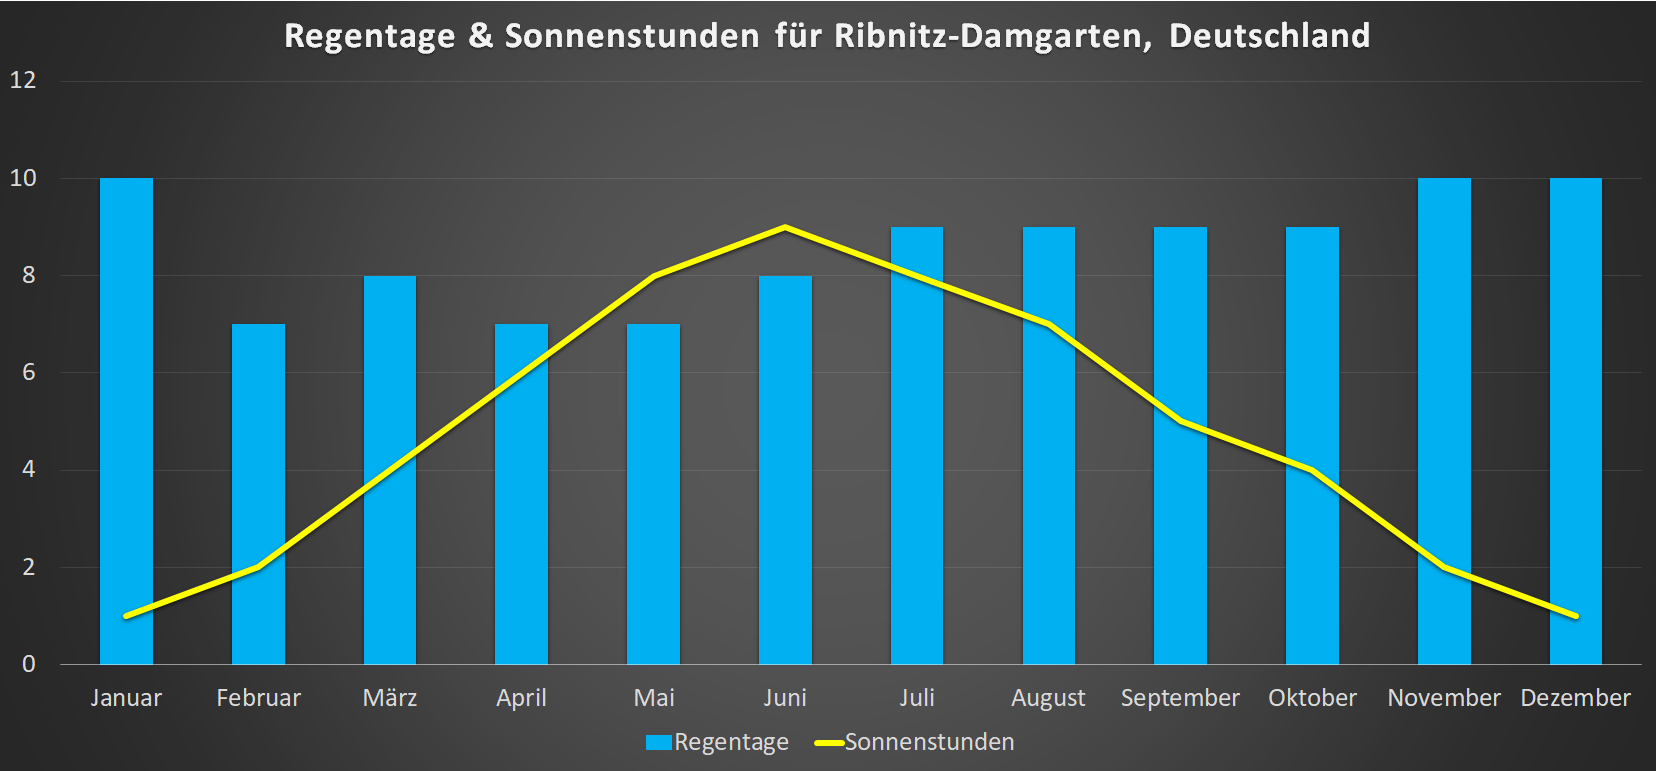 Regentage & Sonnenstunden für Ribnitz-Damgarten im Jahresverlauf